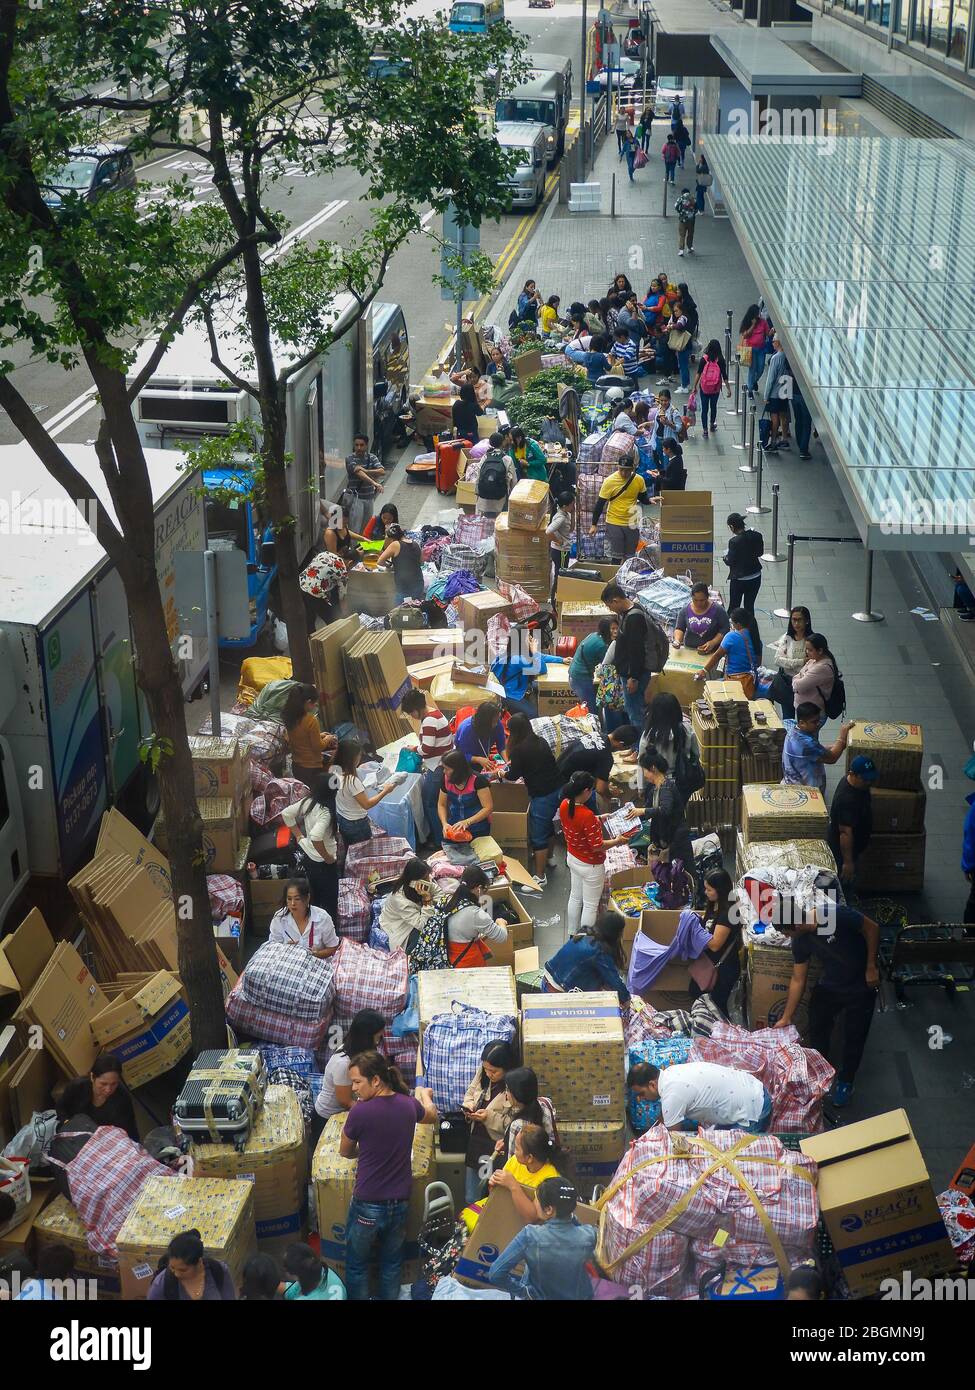 Centre, Hong Kong - décembre 2018 : scène de rue animée, vue aérienne, personnes, boîtes d'emballage, activité. Banque D'Images